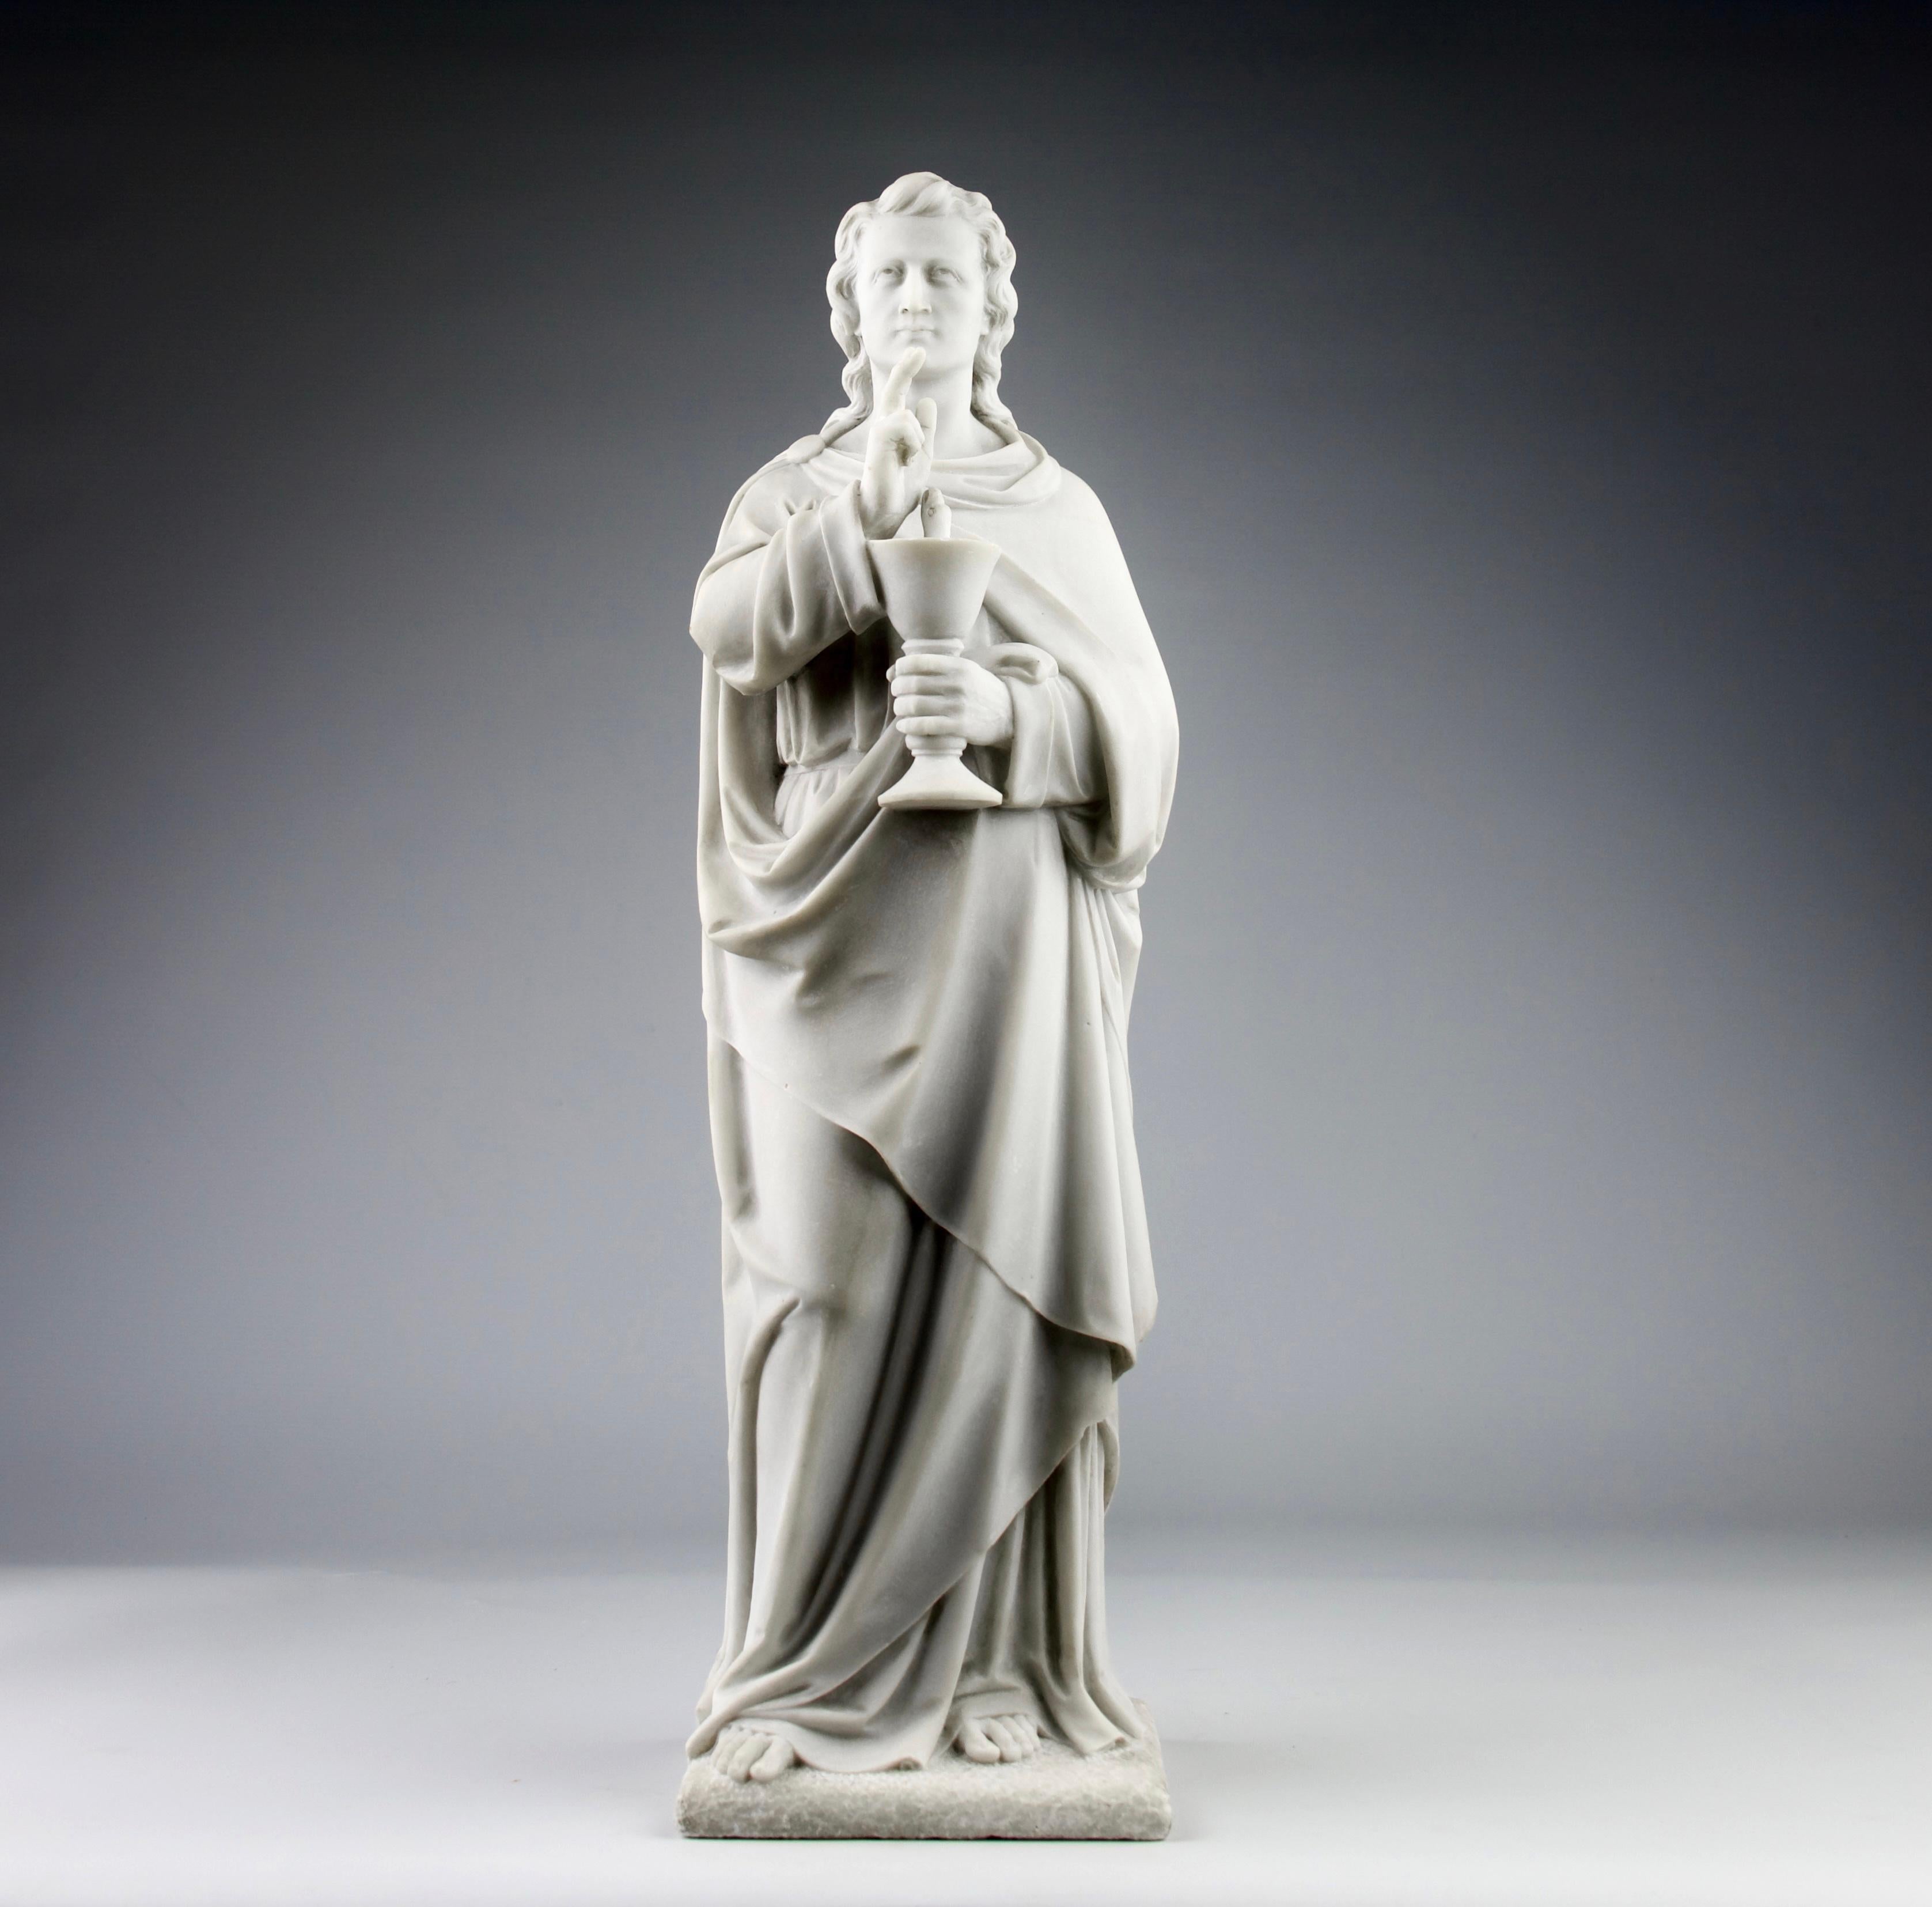 Superbe sculpture en marbre de Saint John l'évangéliste, France 19e siècle.

Dimensions en cm ( H x L x l ) : 58 x 18 x 16

Expédition sécurisée.